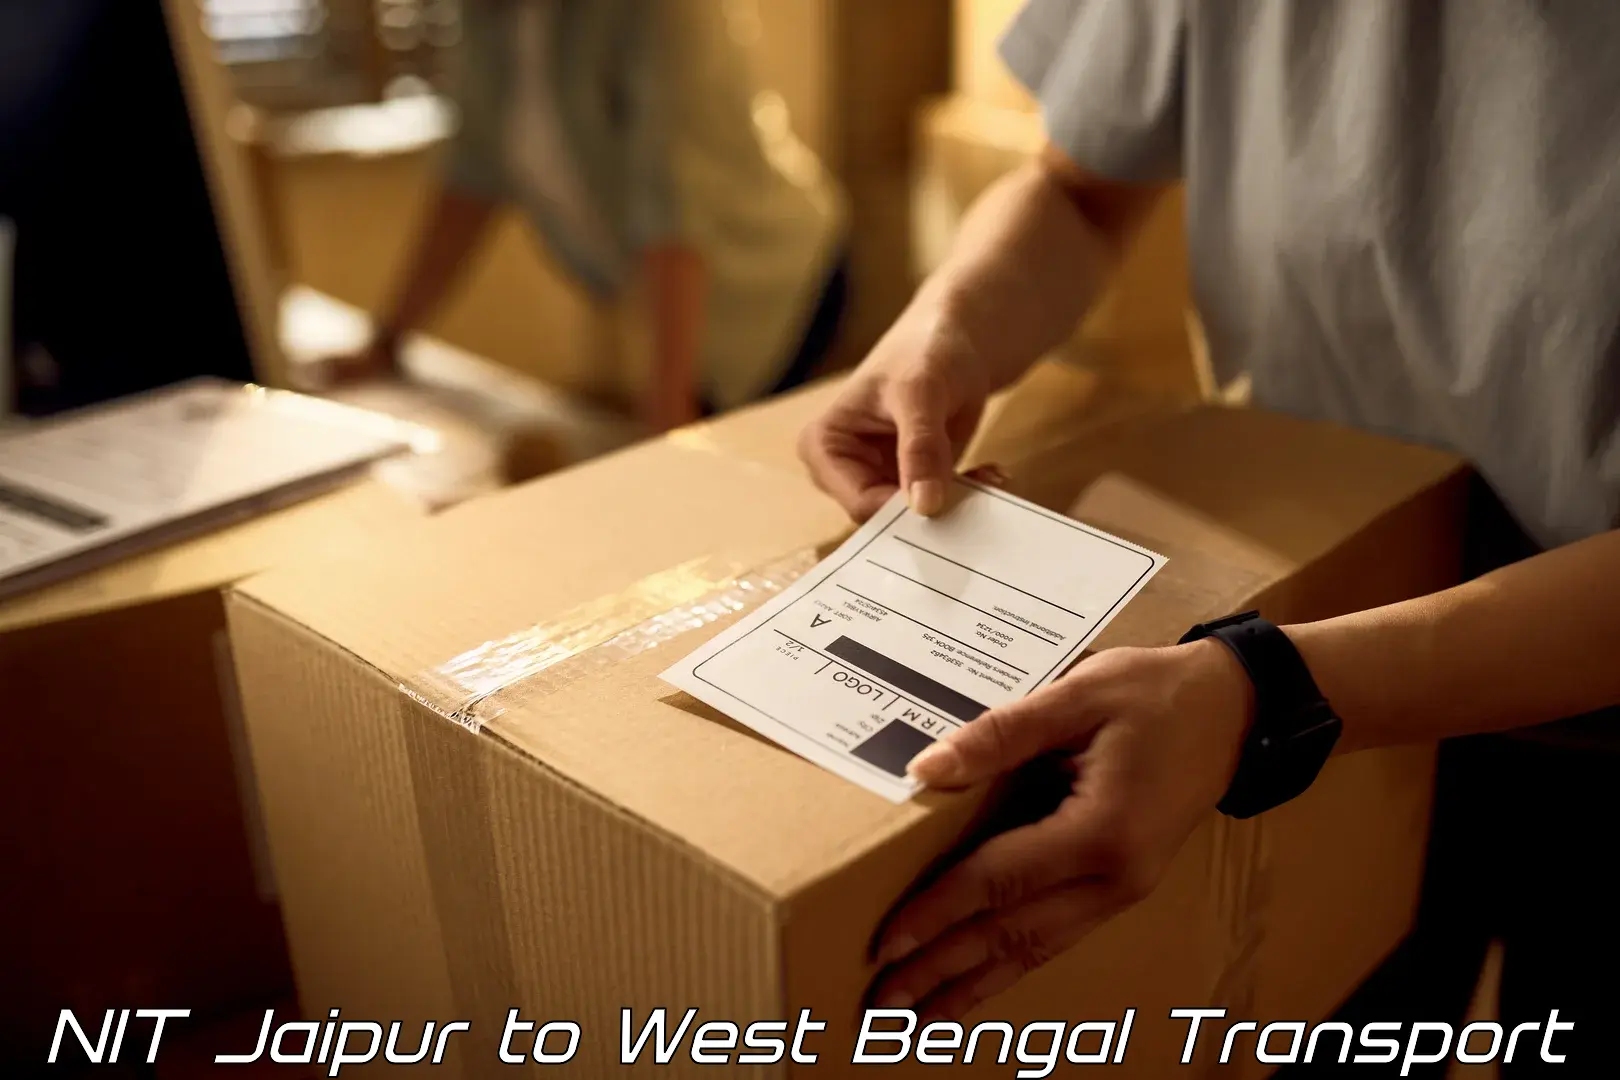 Furniture transport service NIT Jaipur to Joypul